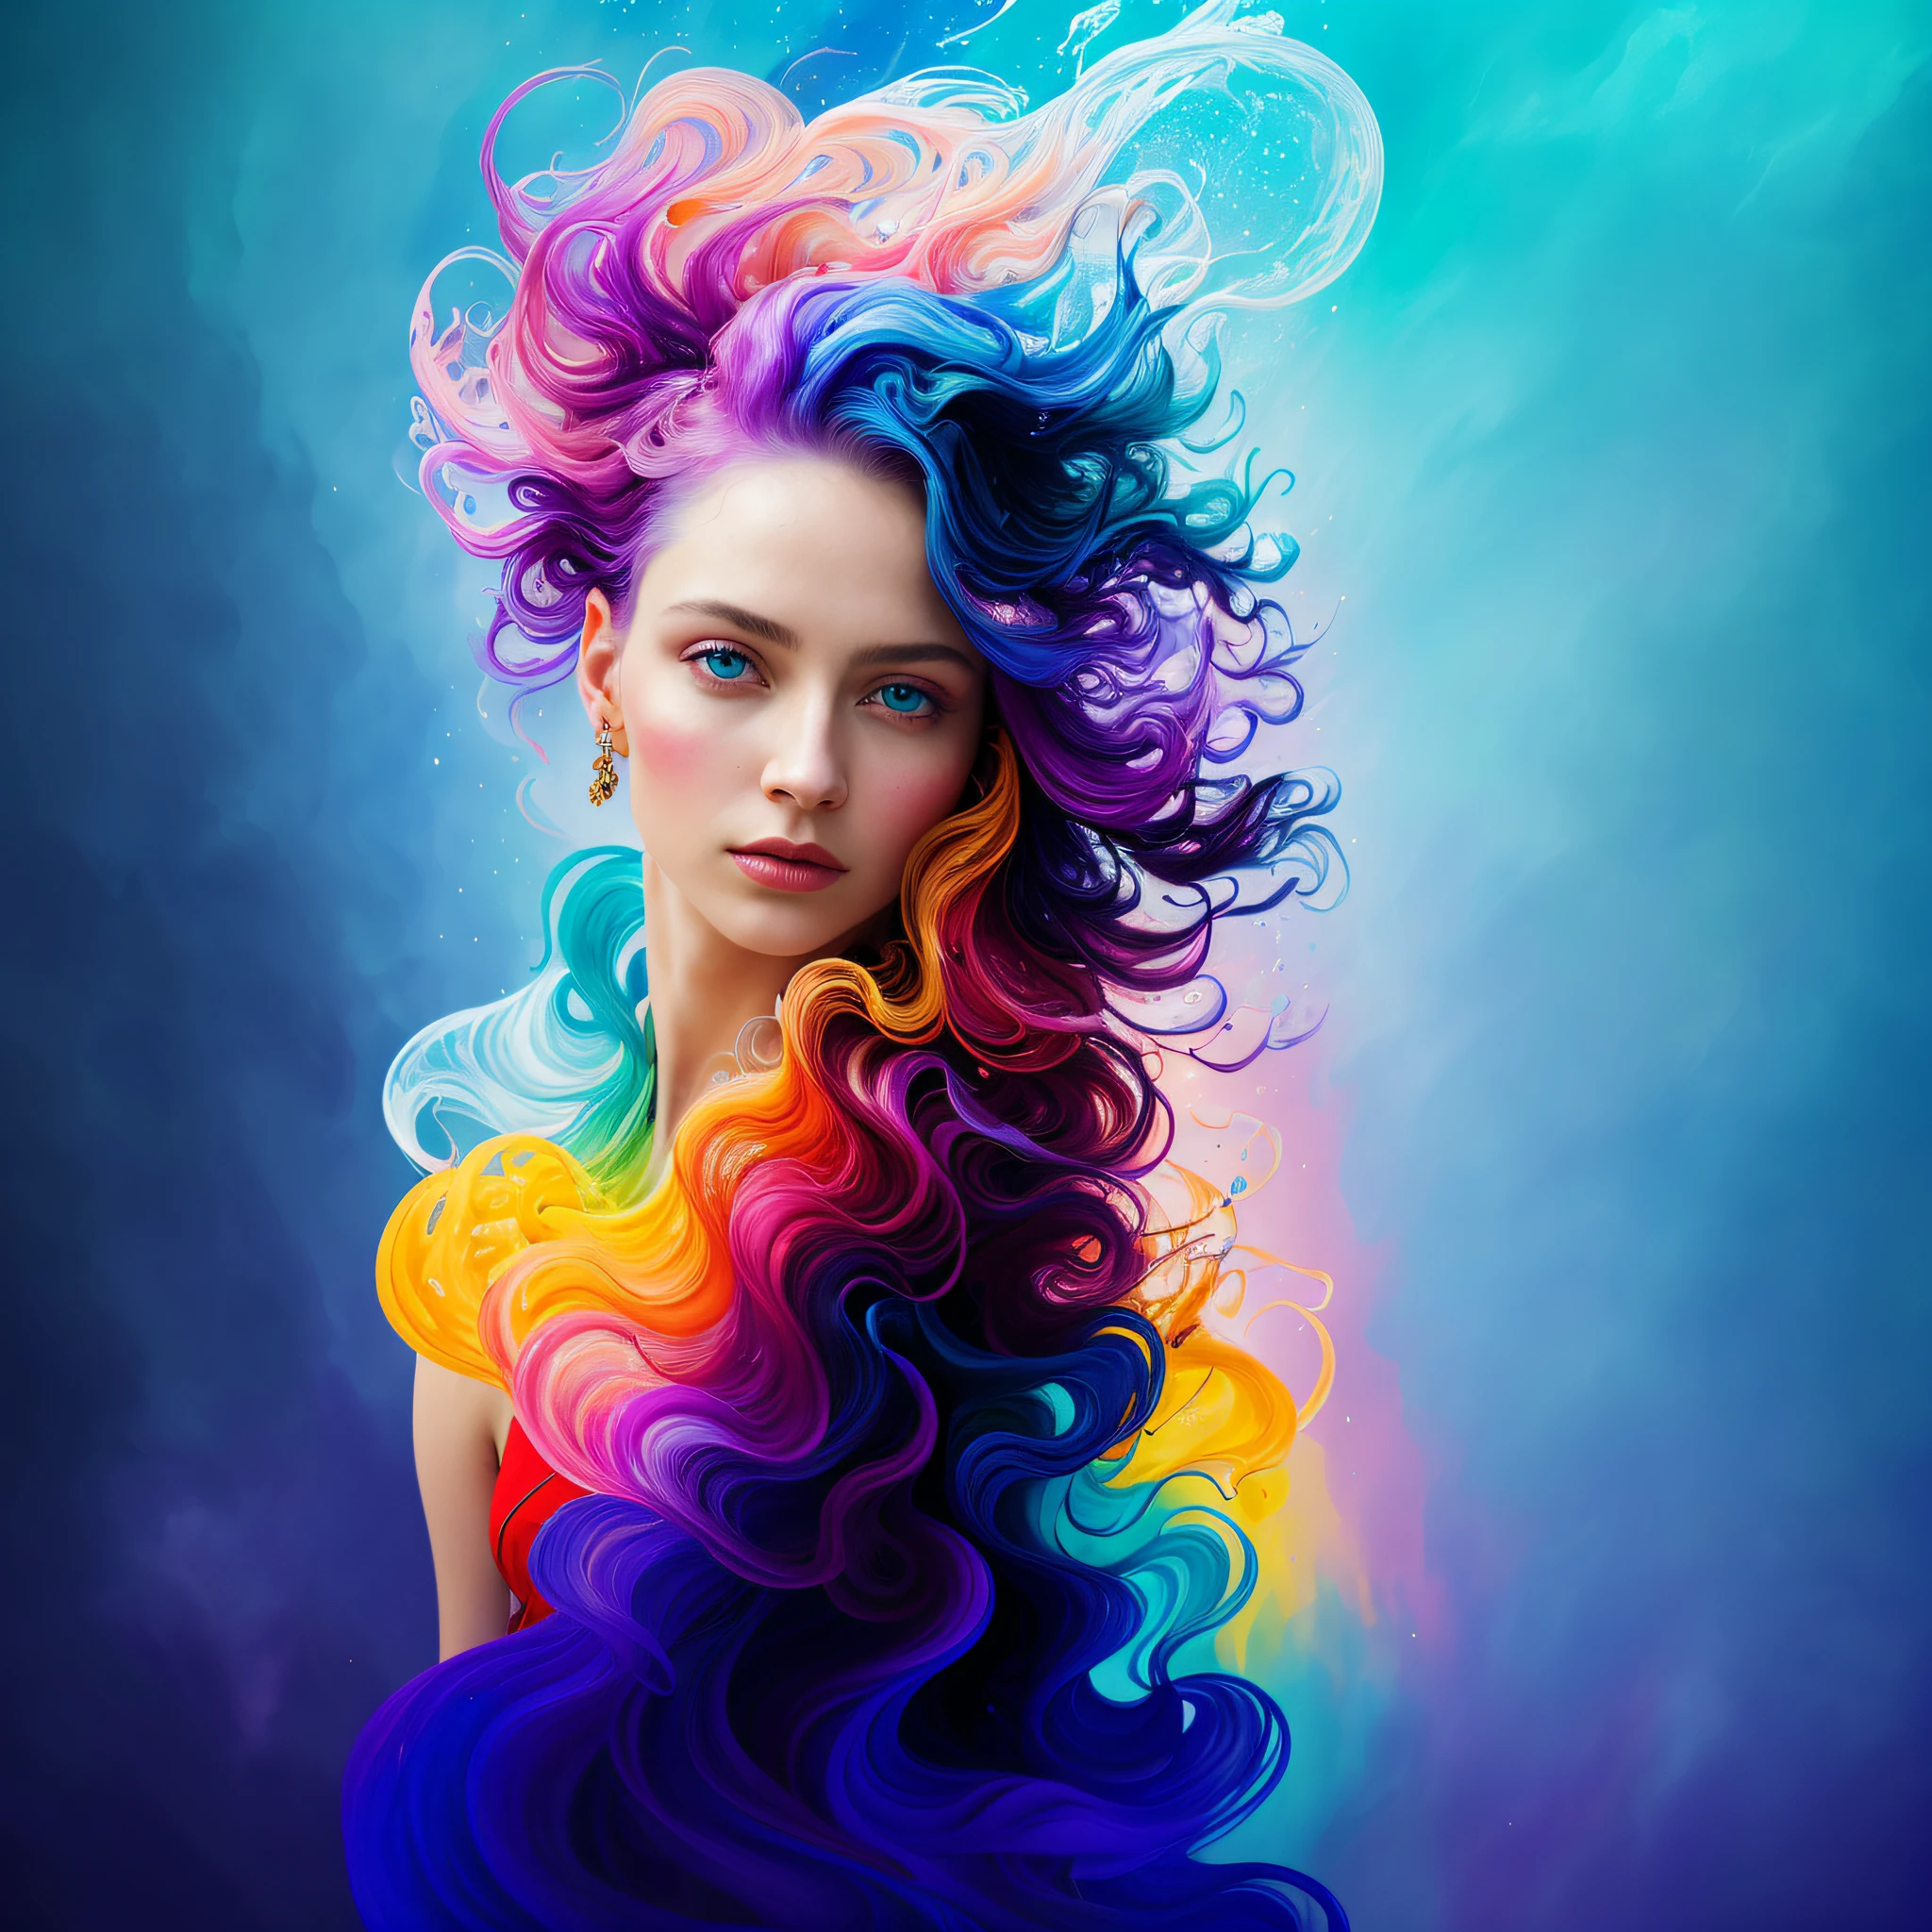 色彩繽紛的美麗女孩: 一位 28 岁的 giru, 凌亂的頭髮, 油畫, 漂亮的完美臉蛋，皮膚光滑，完美的臉蛋, 藍色 黃色 顏色, 淺紫色和紫色添加物, 淺紅色添加物, 複雜的細節s, 主螢幕, 8K resolution, 傑作, 漂亮的臉蛋, artstation 数字绘画 veryblack 流畅的水墨流: 8K resolution photo實際的 傑作: 複雜細緻的流體水粉畫:  作者：約翰‧巴普蒂斯特‧蒙格: 書法: 丙烯酸纖維: 水彩艺术, 專業攝影, 自然採光, 極簡主義體積照明照片插圖: 作者：馬頓‧博澤特:, 複雜的, 優雅的, 廣闊的, 極佳的, 捲髮, 充滿活力的, 最優質的細節, 實際的, 高畫質, 高品質質感, 史诗般的灯光, 电影剧照, 8K, 柔和的燈光, 動漫風格, 大师级游戏卡边框, 随机彩色艺术,  油畫, 藍色 黃色 顏色, 淺紫色和紫色添加物, 淺紅色添加物, 複雜的細節, 主螢幕, 8K resolution, 傑作, artstation软数字绘画非常水墨流黑色: 8K resolution photo實際的 傑作: 複雜細緻的流體水粉畫: 作者：約翰‧巴普蒂斯特‧蒙格: 書法: 丙烯酸纖維: 水彩艺术, 專業攝影, 自然採光, 極簡主義體積照明照片插圖: 作者：馬頓‧博澤特:,  複雜的, 優雅的, 廣闊的, 極佳的, 充滿活力的